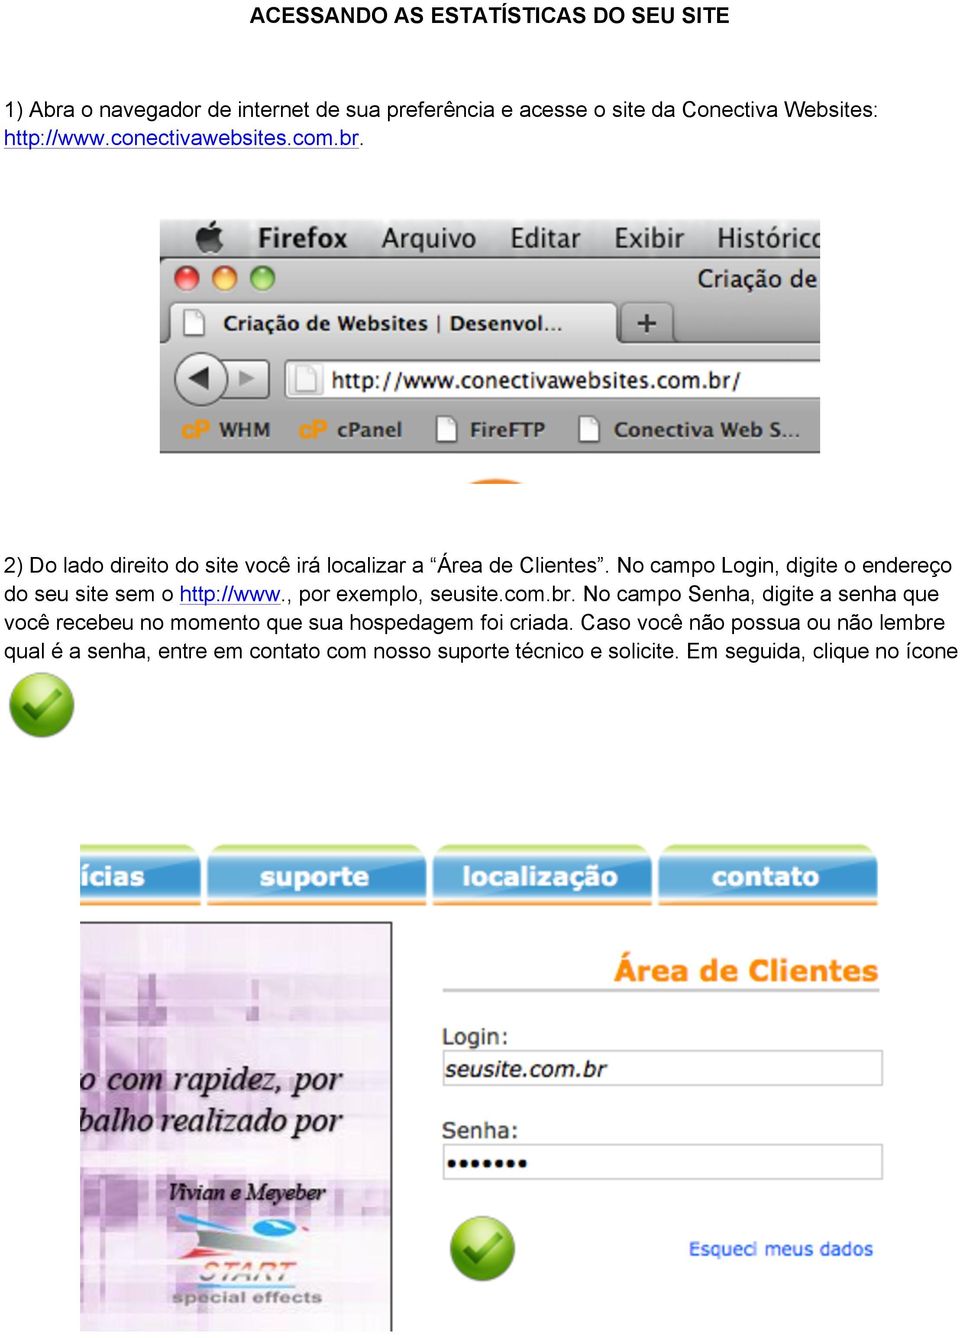 No campo Login, digite o endereço do seu site sem o http://www., por exemplo, seusite.com.br.